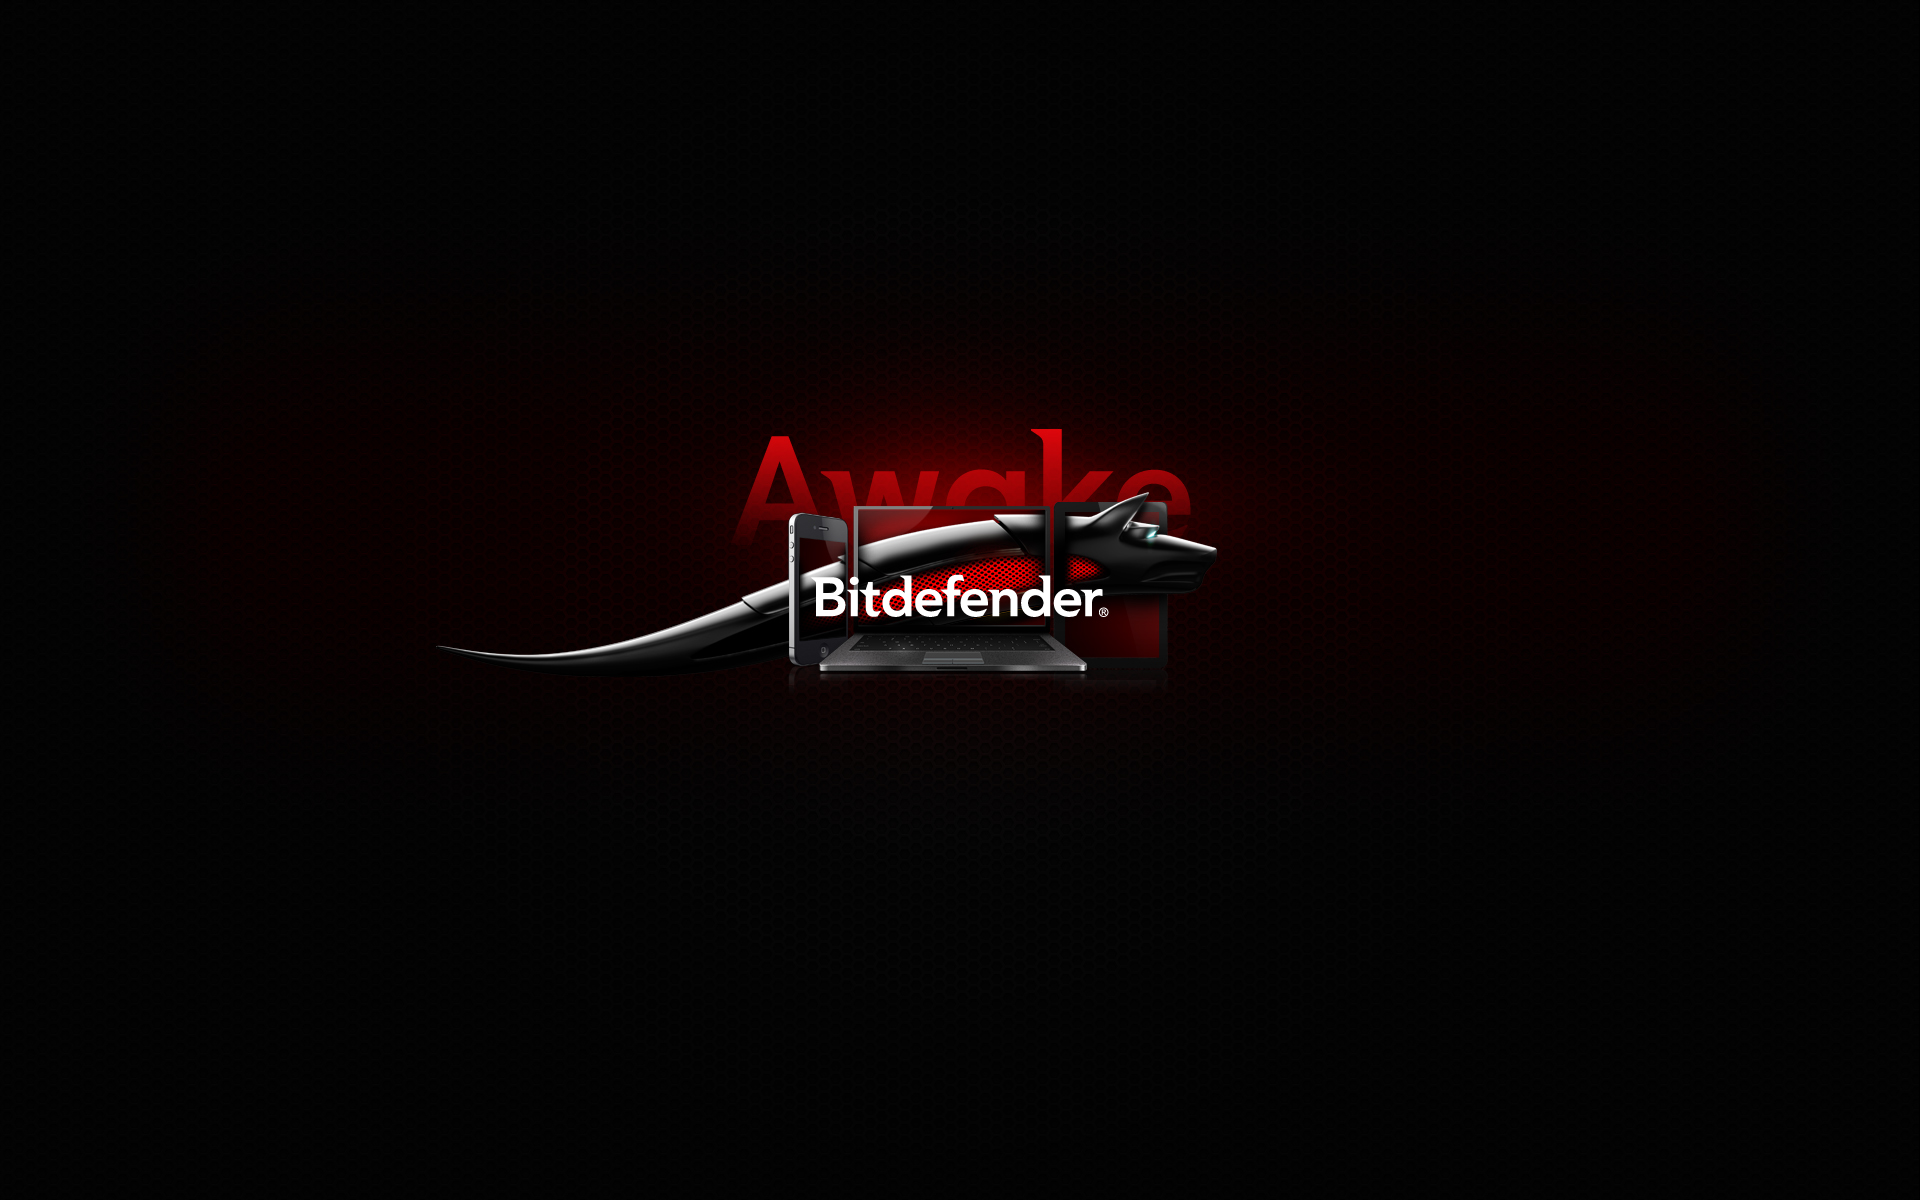 Bitdefender Pictures Ikp86 Widescreen Wallpaper